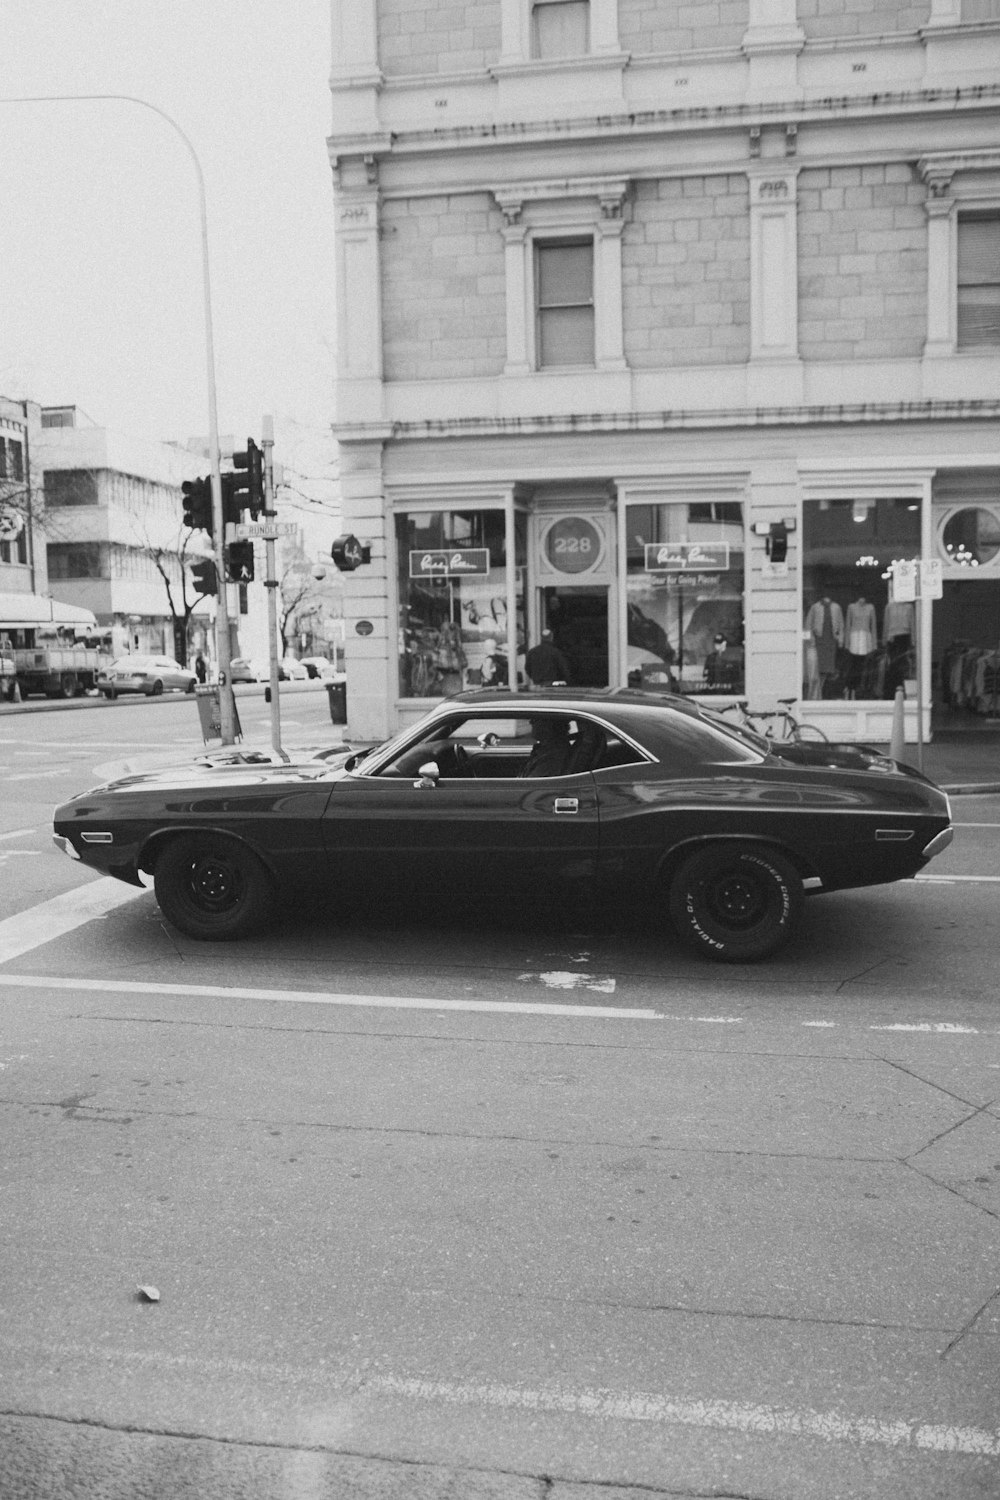 Una foto en blanco y negro de un coche en una calle